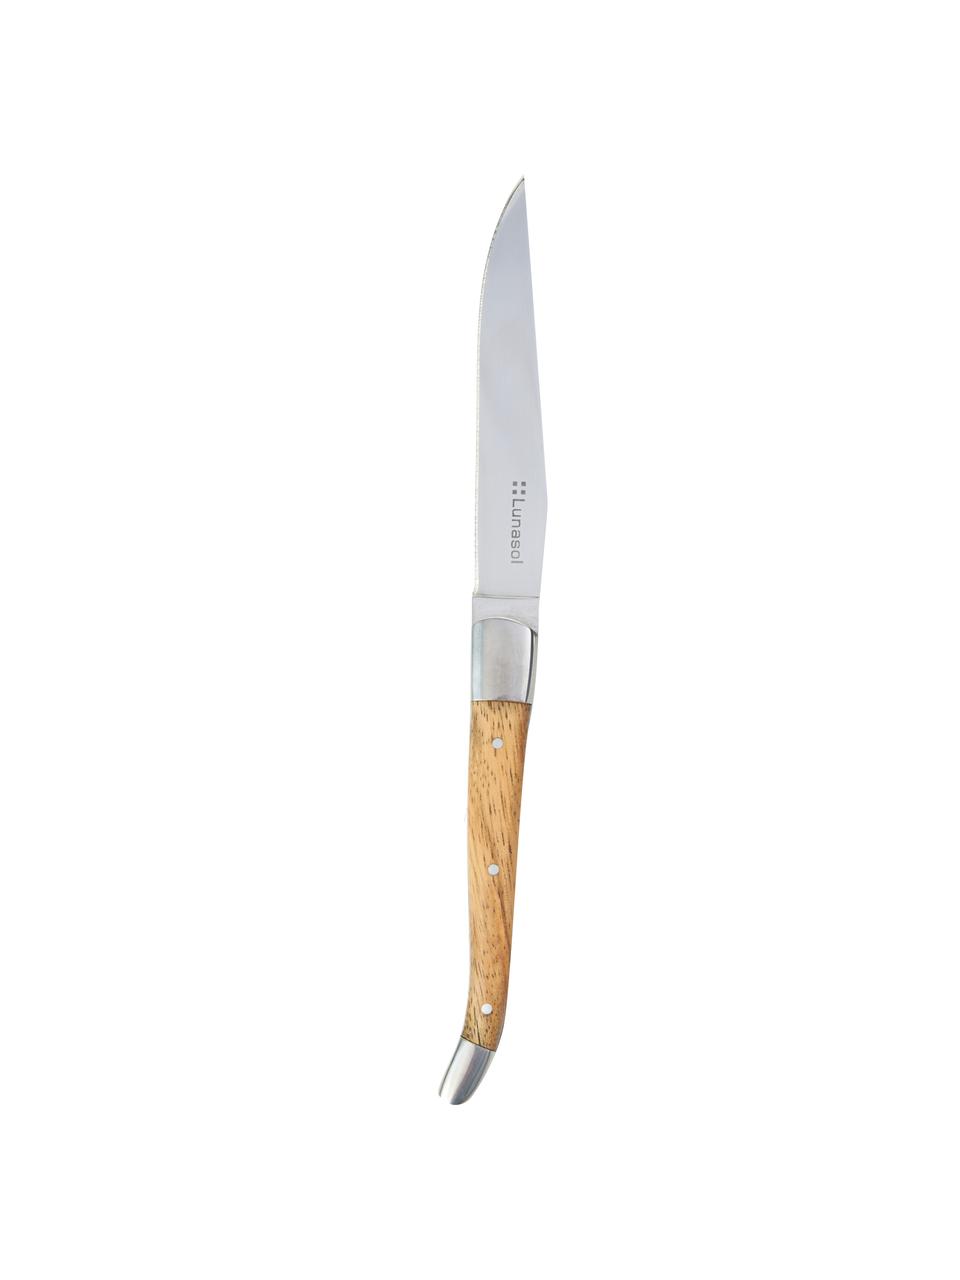 Steakový nůž s dřevěnou rukojetí Jasmine, 6 ks, Stříbrná, světlé dřevo, D 23 cm